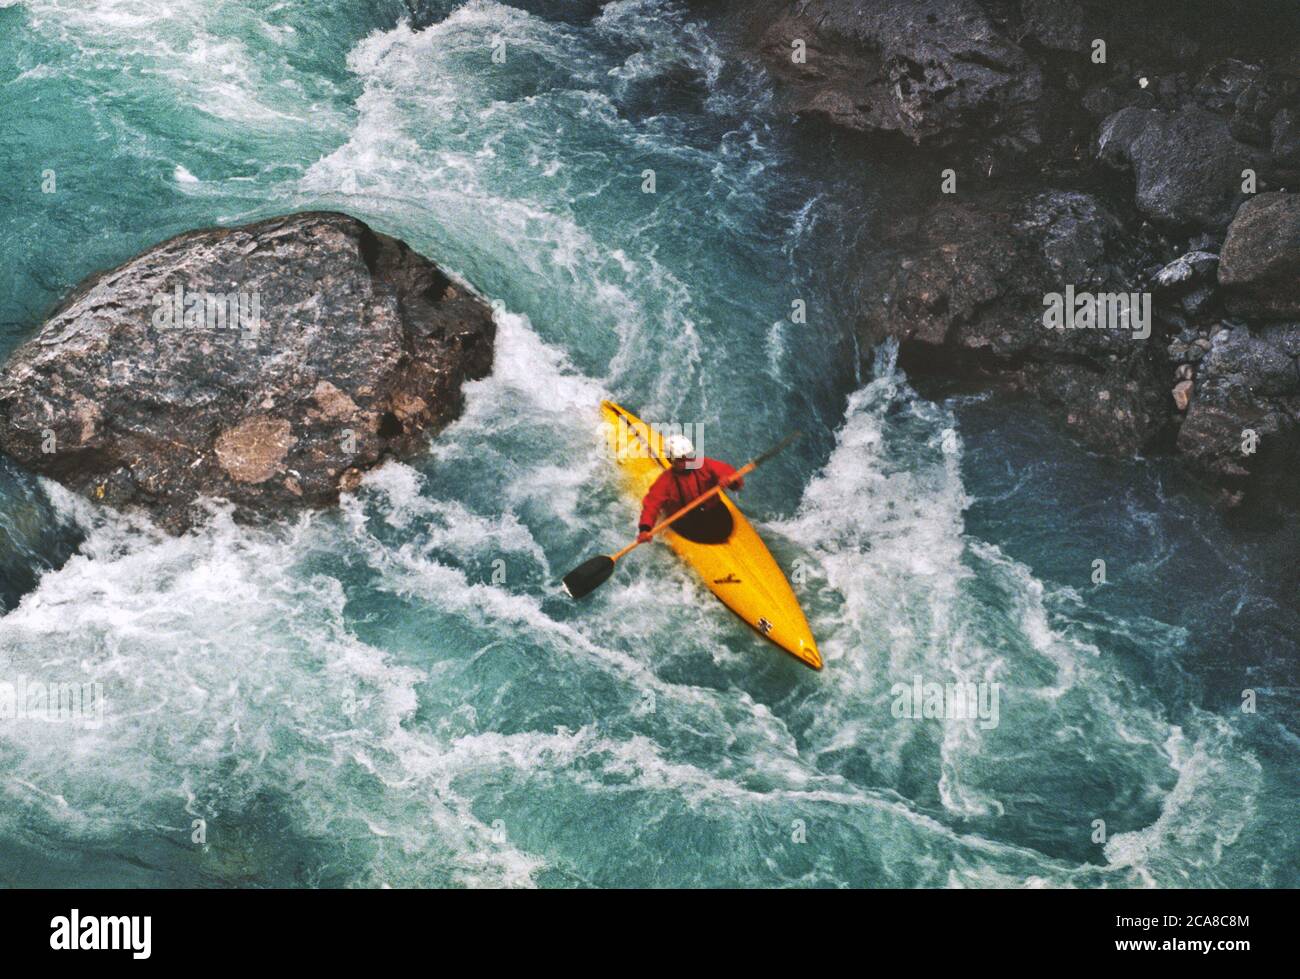 En canoa por el torrente de Cellina. Foto de stock